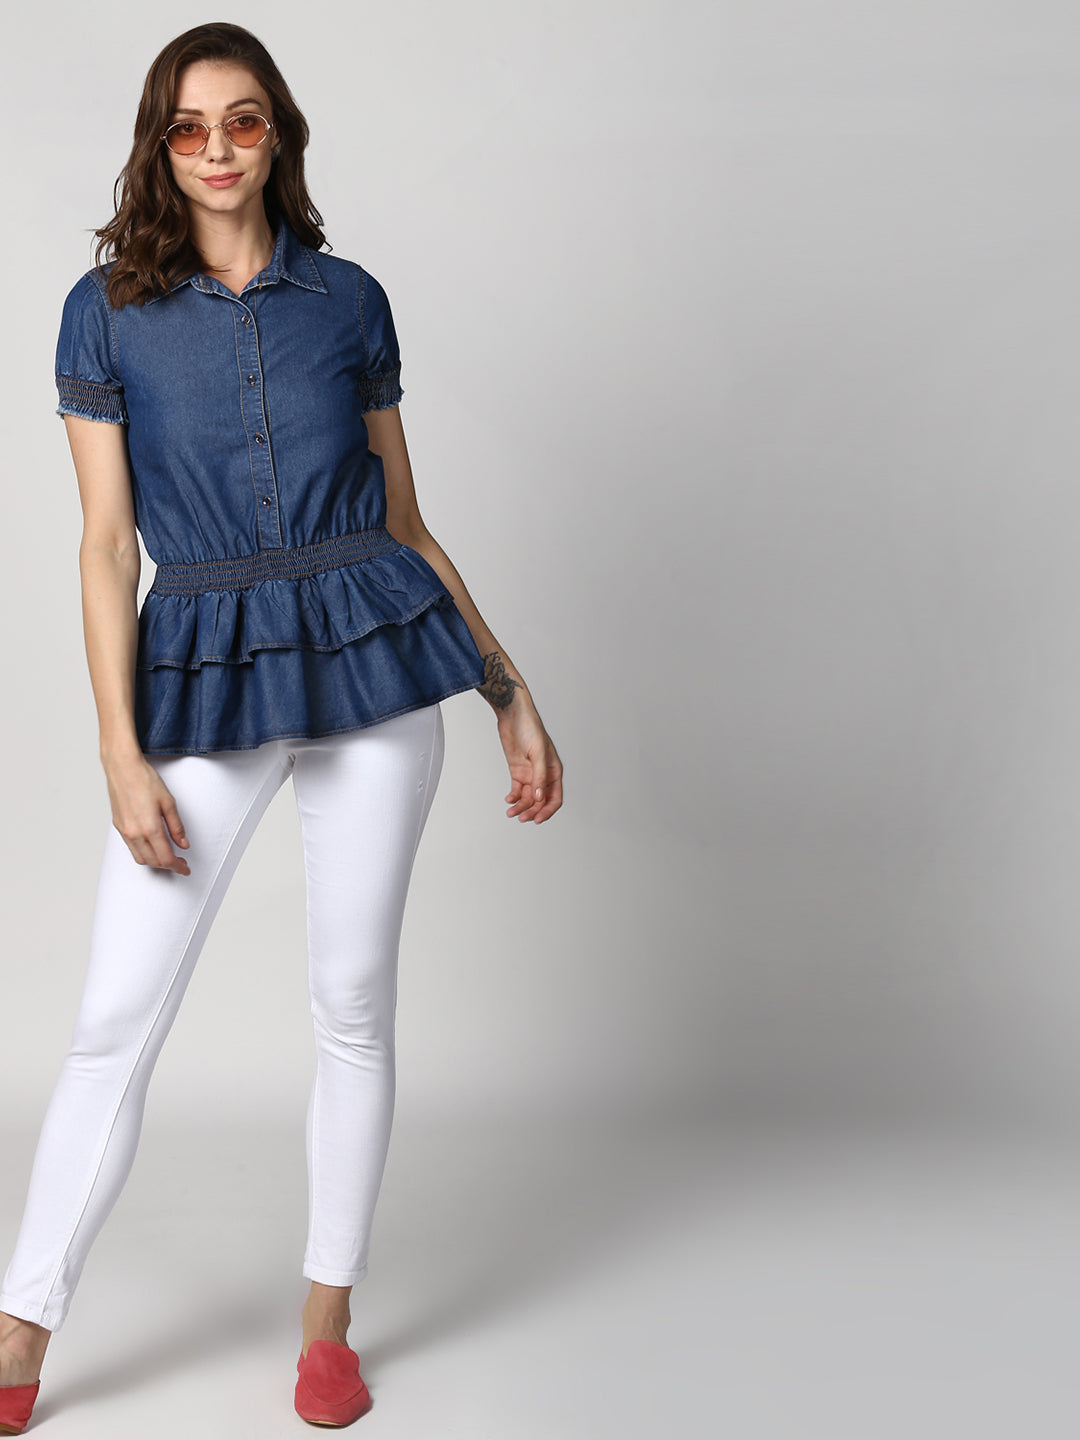 Women's Navy Blue Denim Peplum Top cum Shirt with elasticated waistband